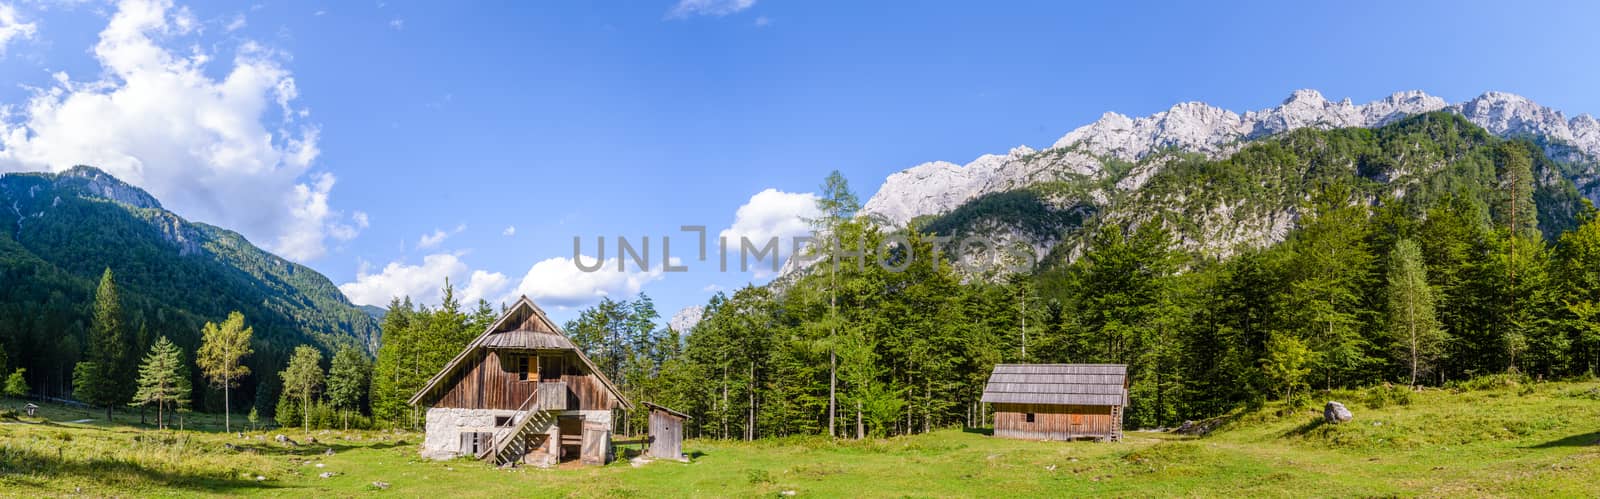 Mountain cabin in European Alps, Robanov kot, Slovenia by asafaric